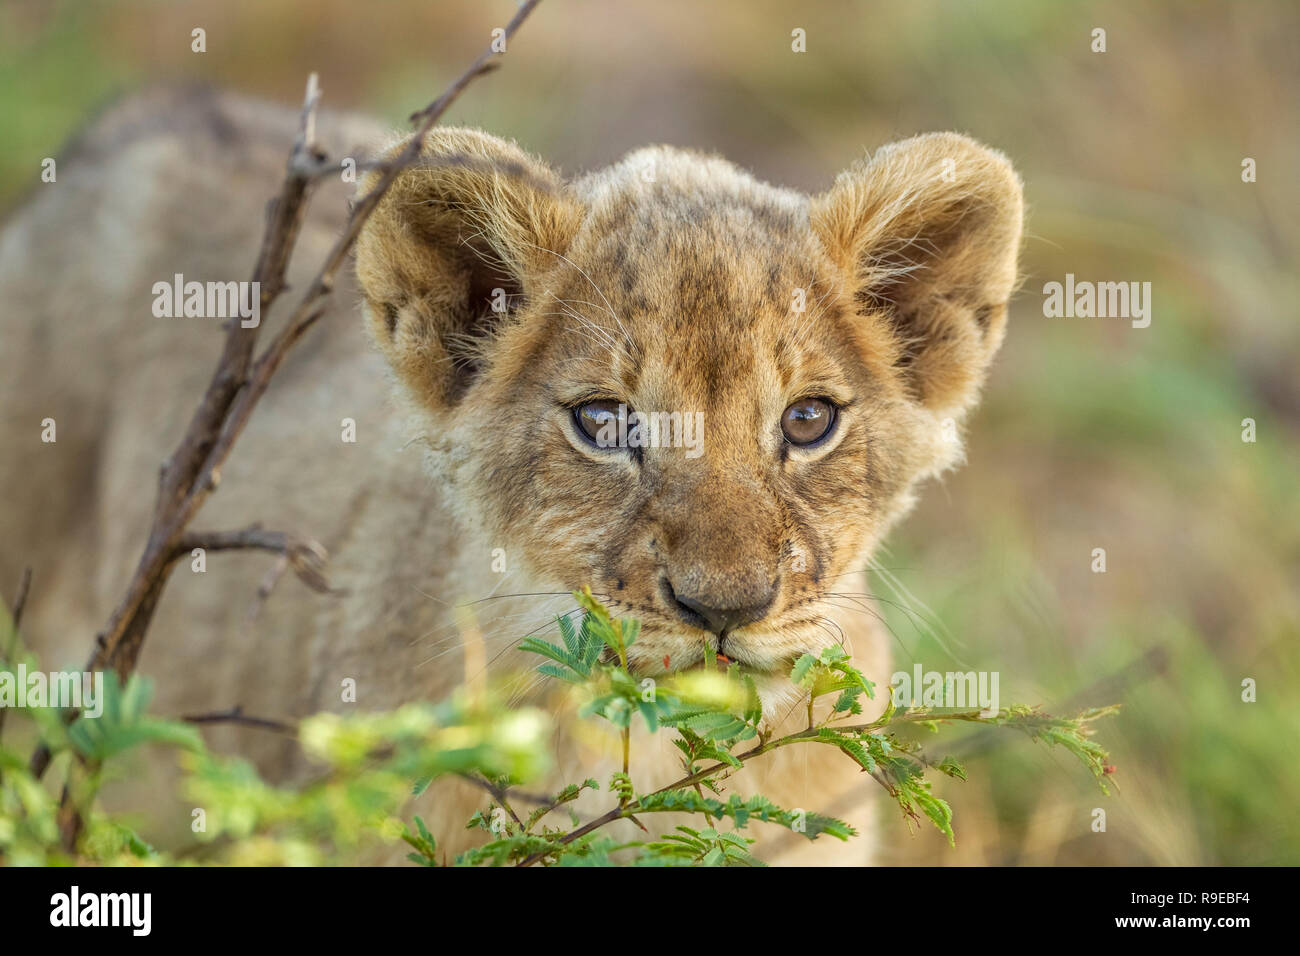 mignon petit lion de bébé qui se cache derrière un buisson et regarde curieusement à la caméra Banque D'Images